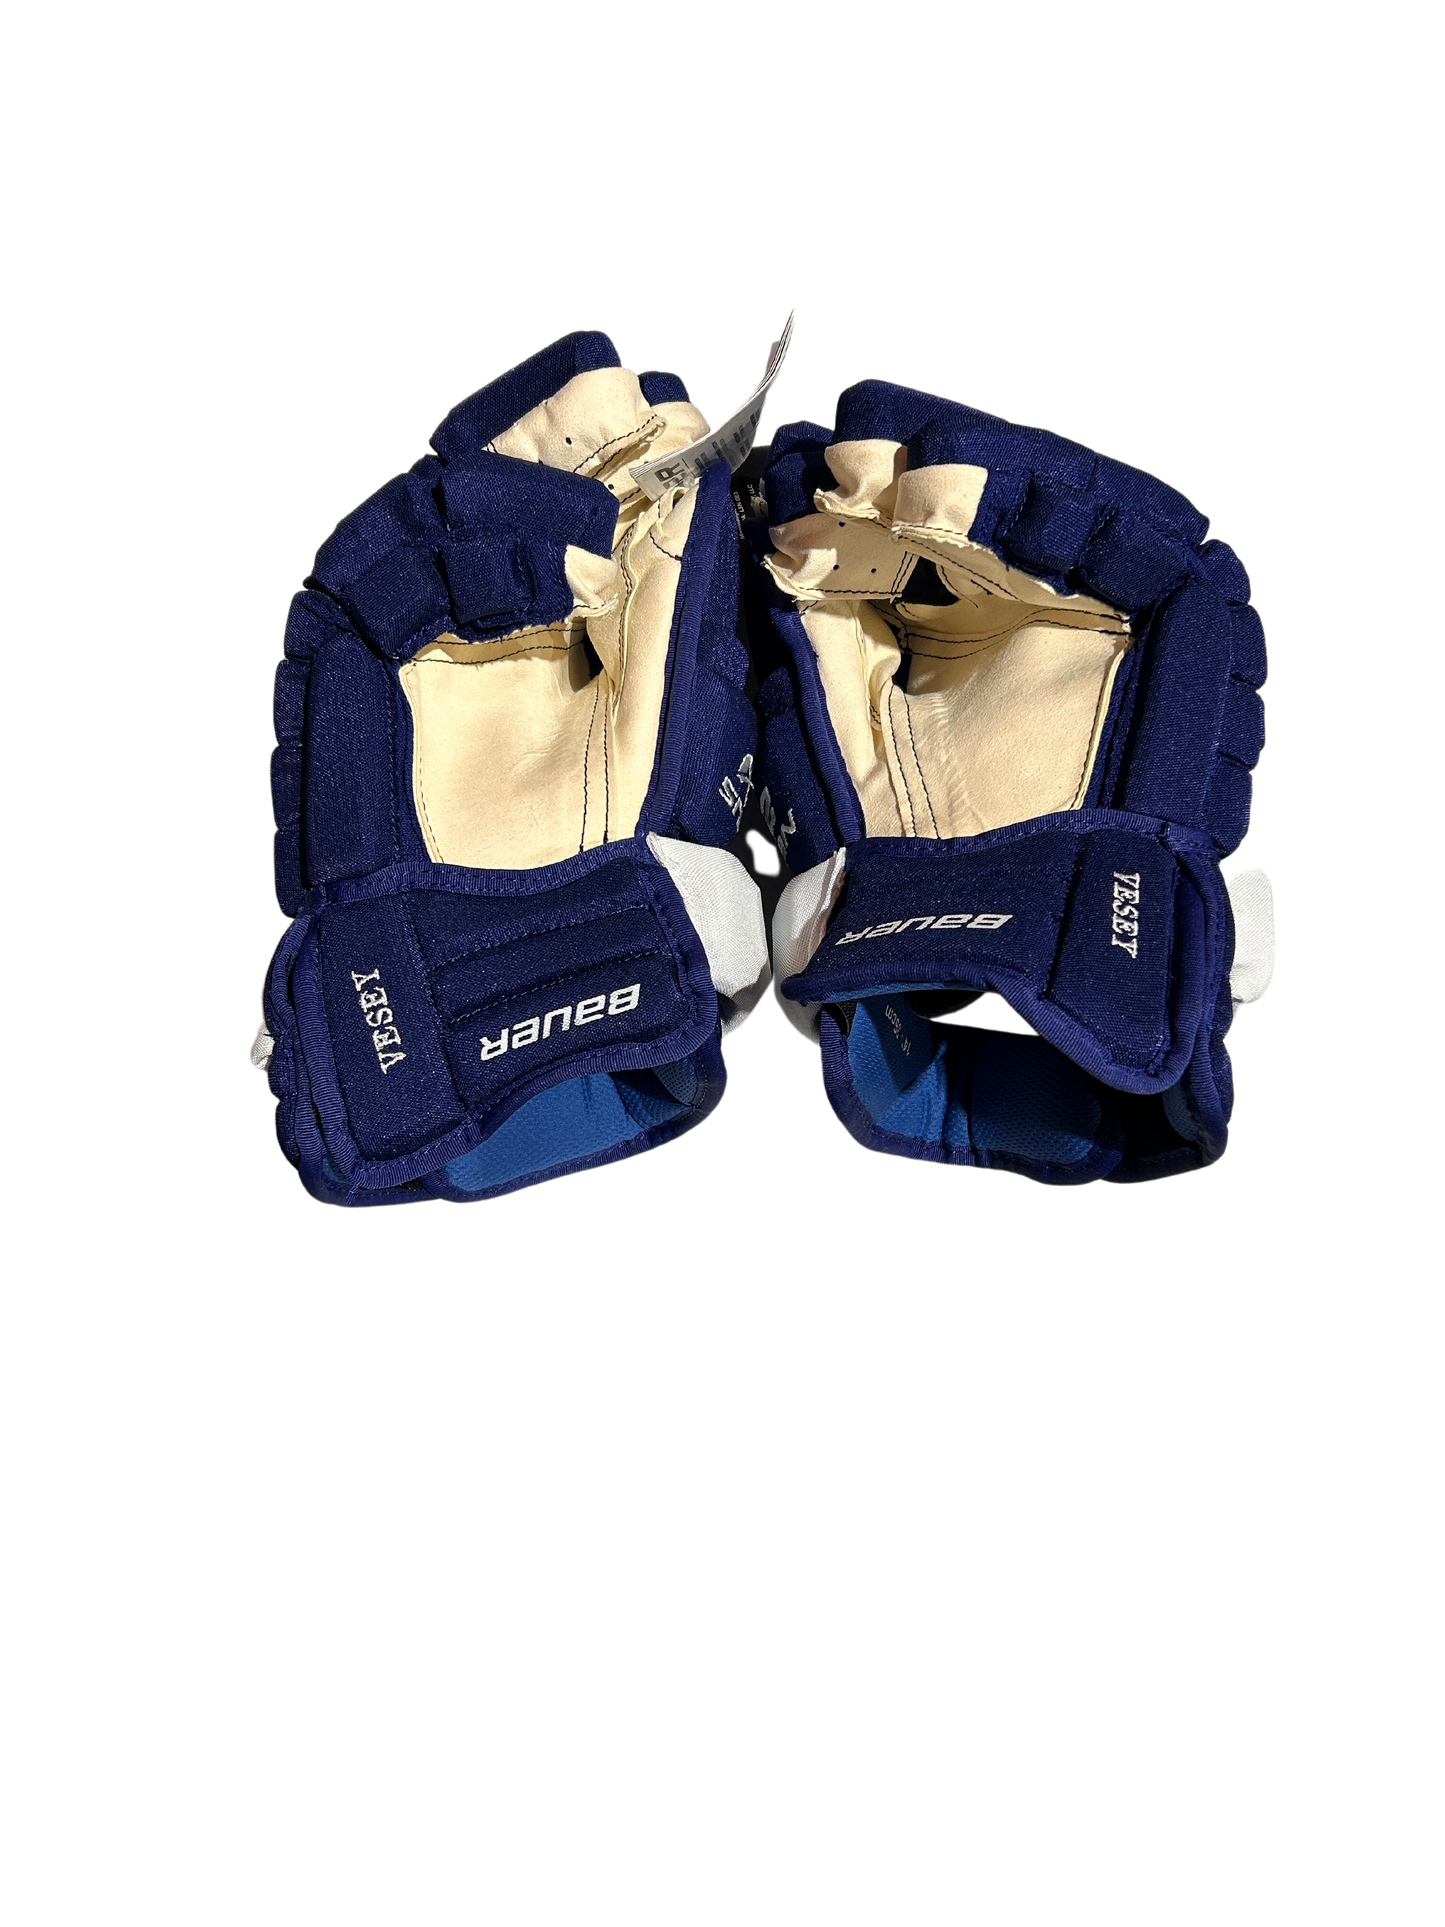 New Vessy Toronto Maple Leafs 14" Bauer Nexus 2N Pro Gloves